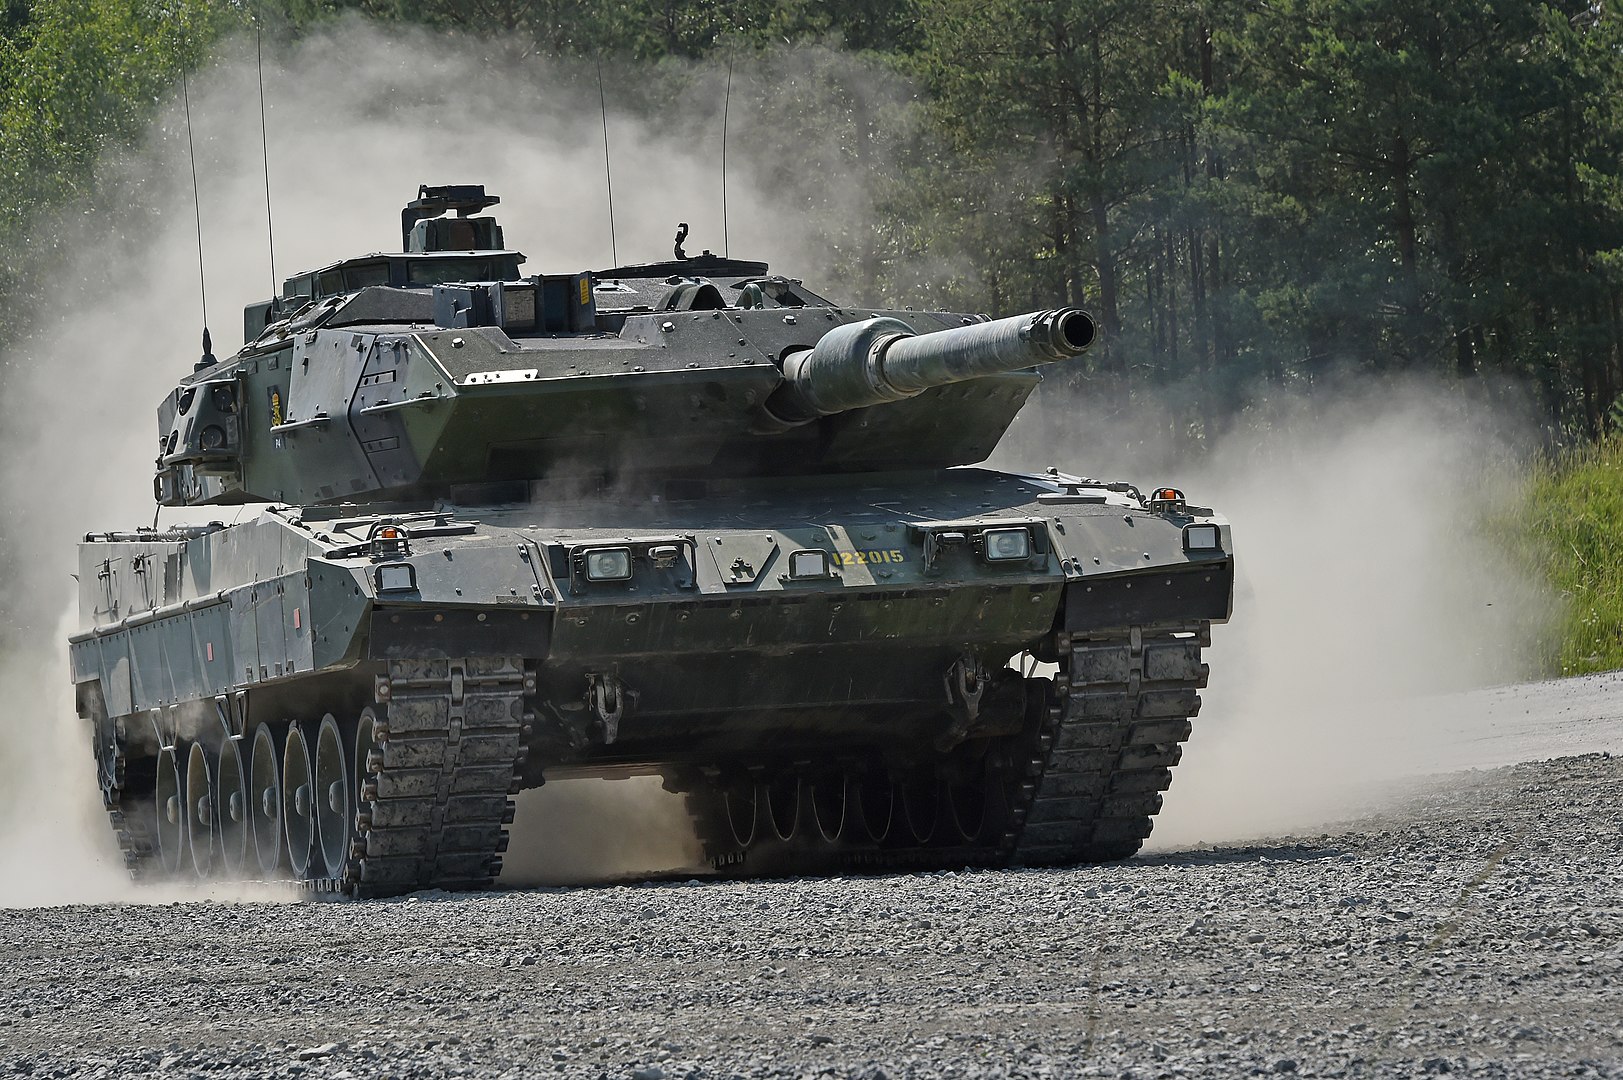 La Svezia è pronta a inviare all'Ucraina i carri armati Stridsvagn 122 - Leopard 2A5 modificati con protezione migliorata